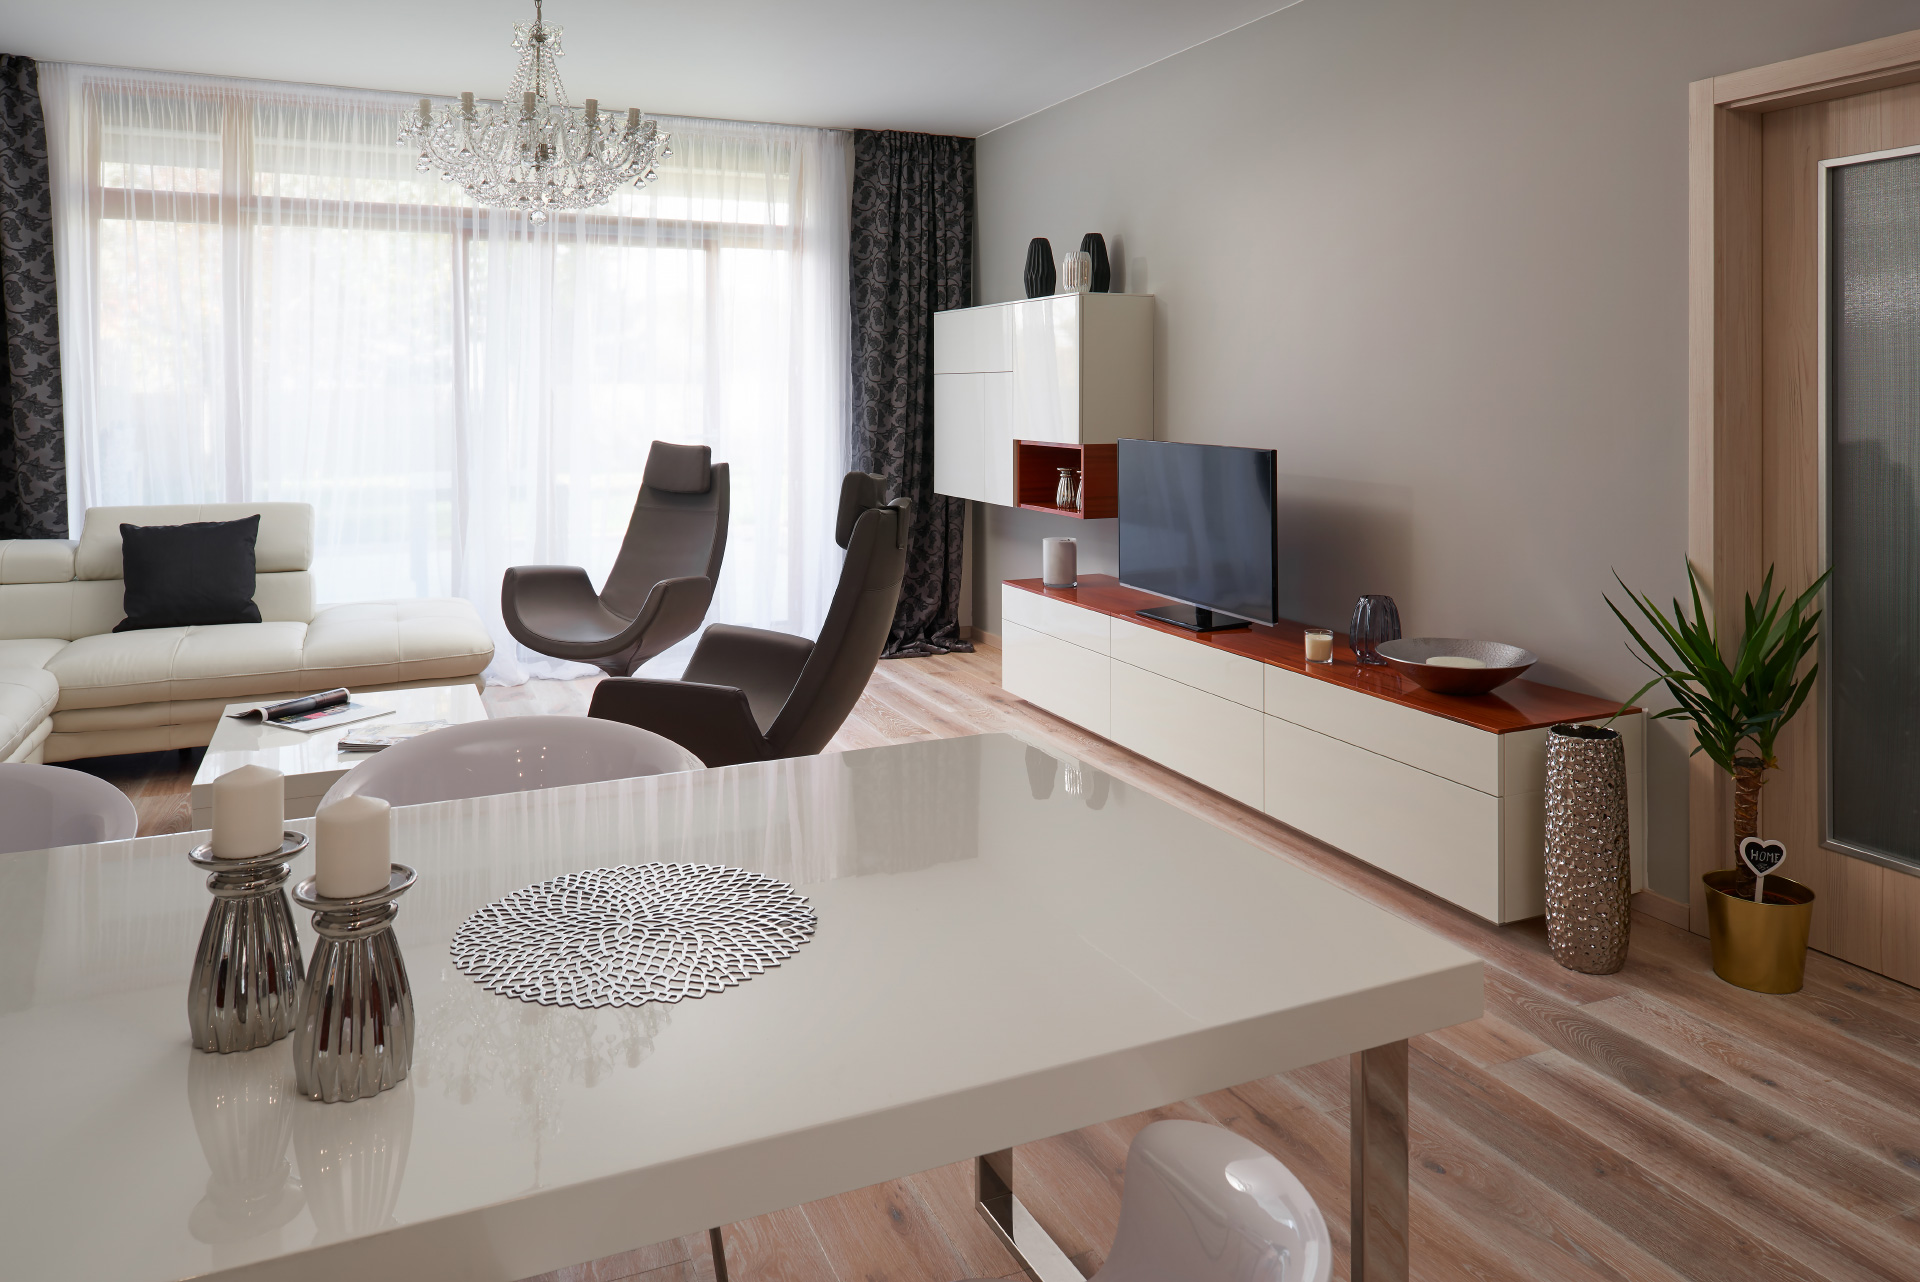 Hanák-Möbel Realisierung Wohnzimmer